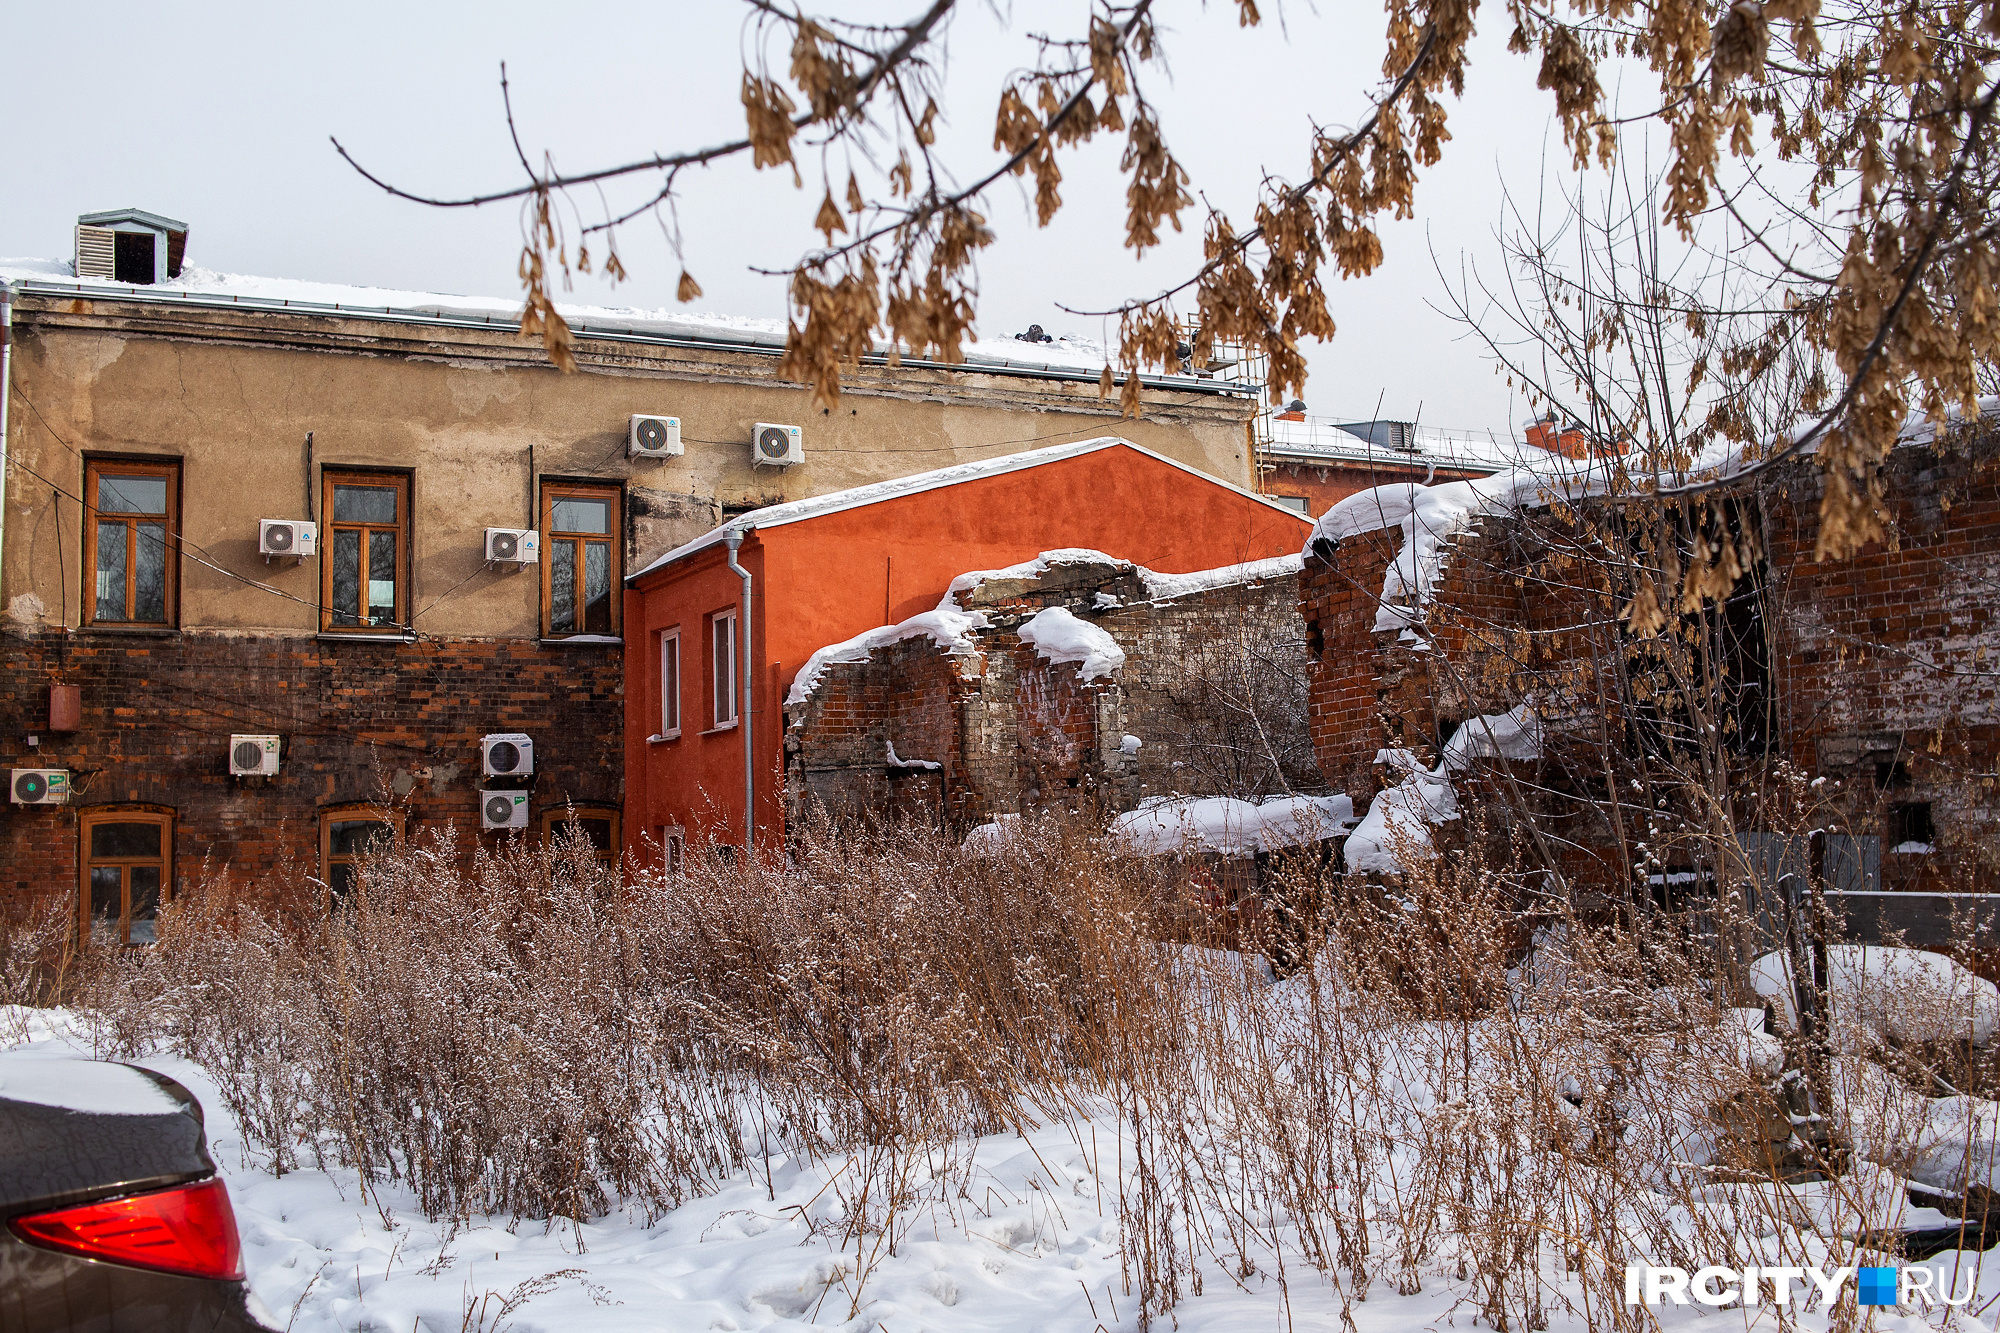 Рядом с одним из оранжевых пристроев — разрушенное двухэтажное каменное здание. Возможно, оно было частью усадьбы Егорова, в частности, хозпостройкой